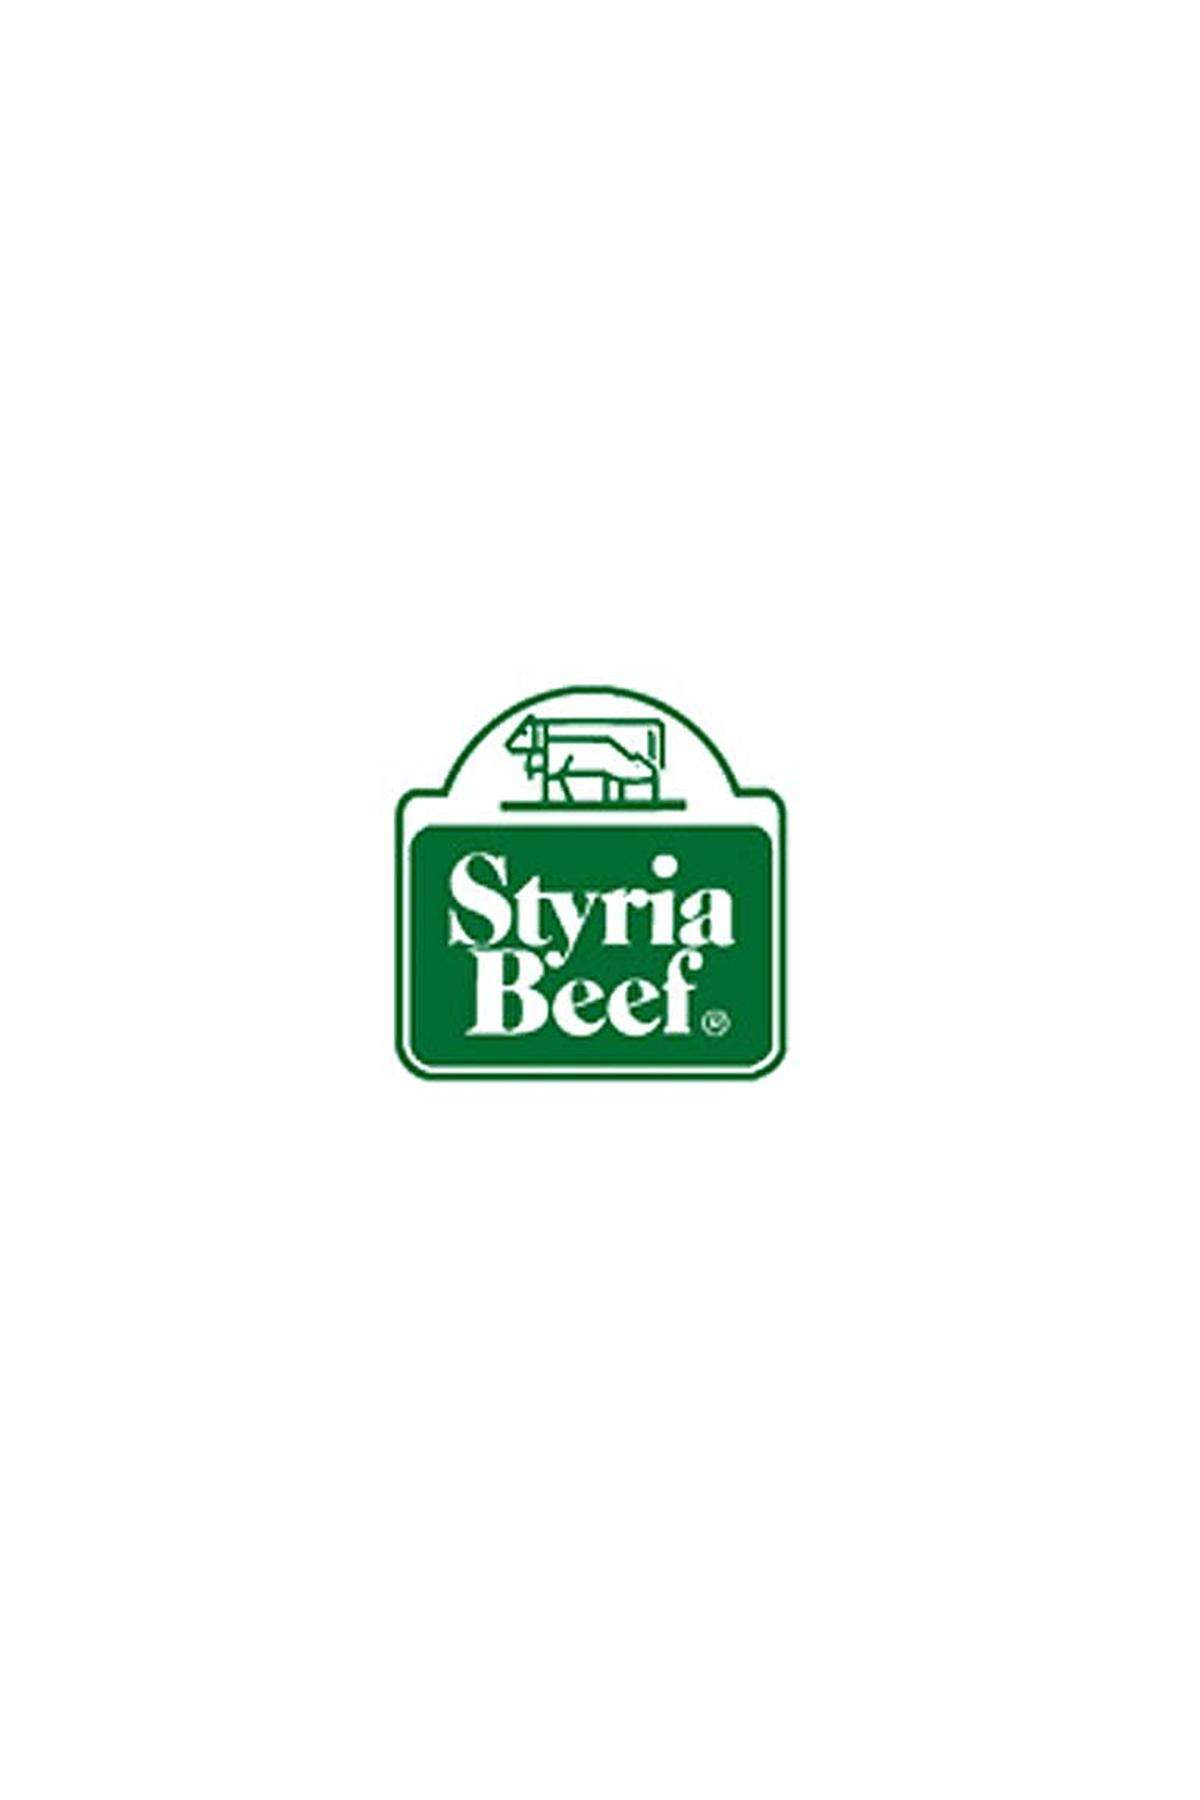 Styria Beef ist eine Premium-Rindfleischmarke steirischer Biobauern. Als Grundlage gelten die EU-Bio-Verordnungen, die Bio-Richtlinien des Österreichischen Lebensmittelbuches und die Richtlinien von Bio Austria.